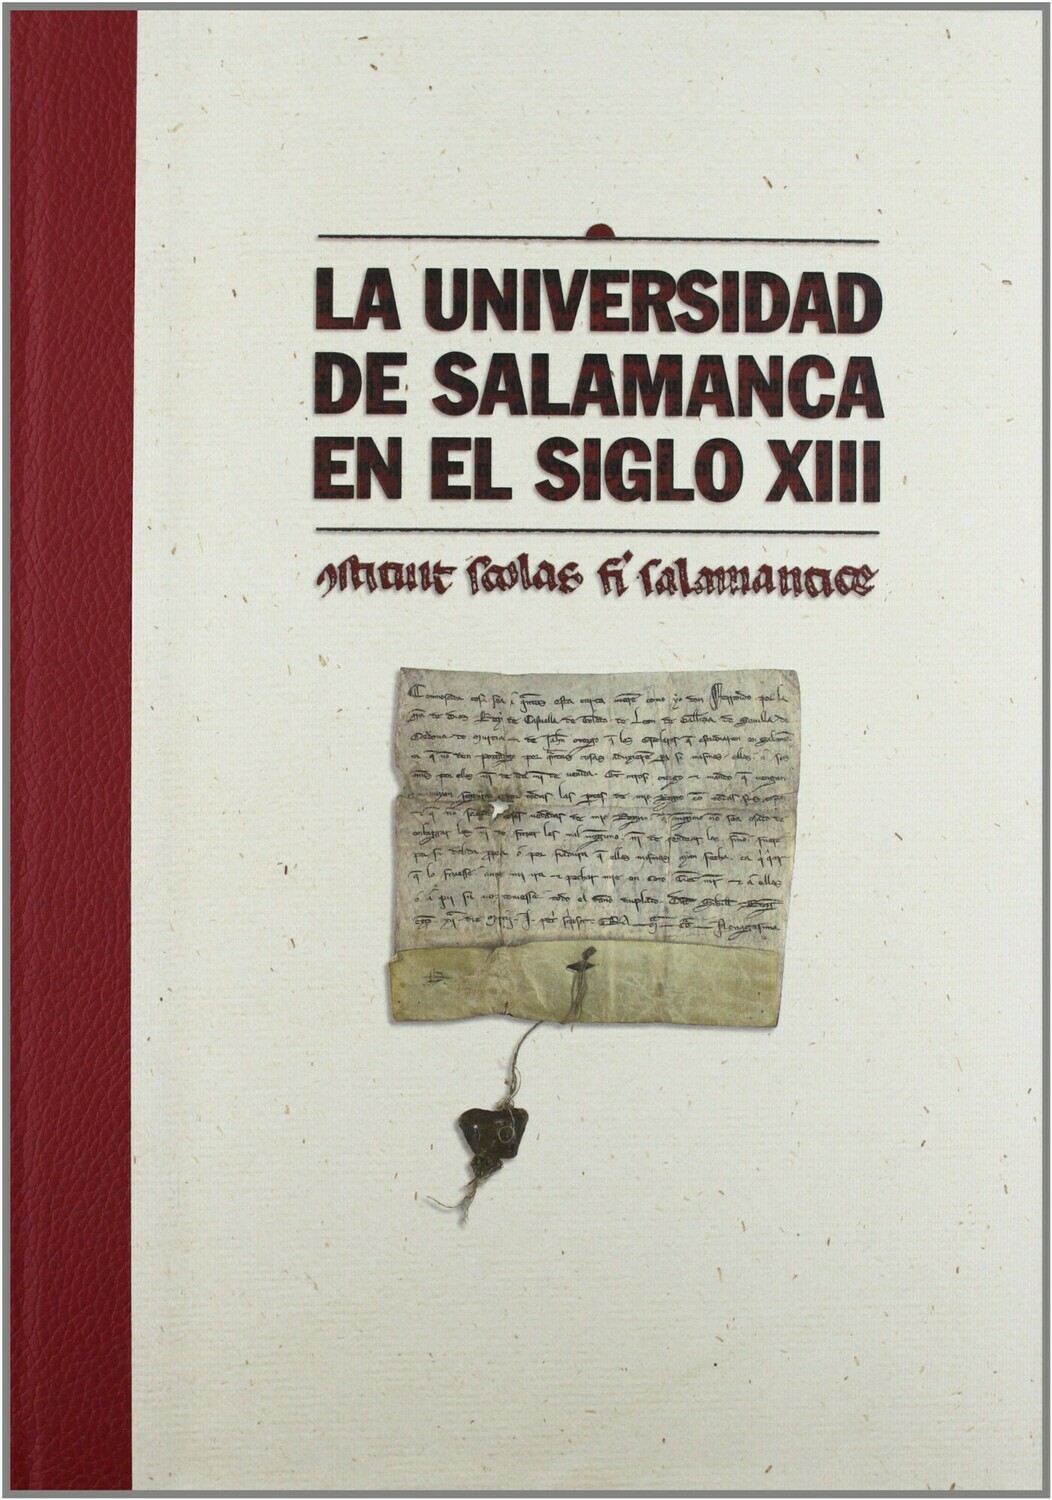 La Universidad de Salamanca en el siglo XIII: CONSTITUIT SCHOLAS FIERI SALMANTICÆ